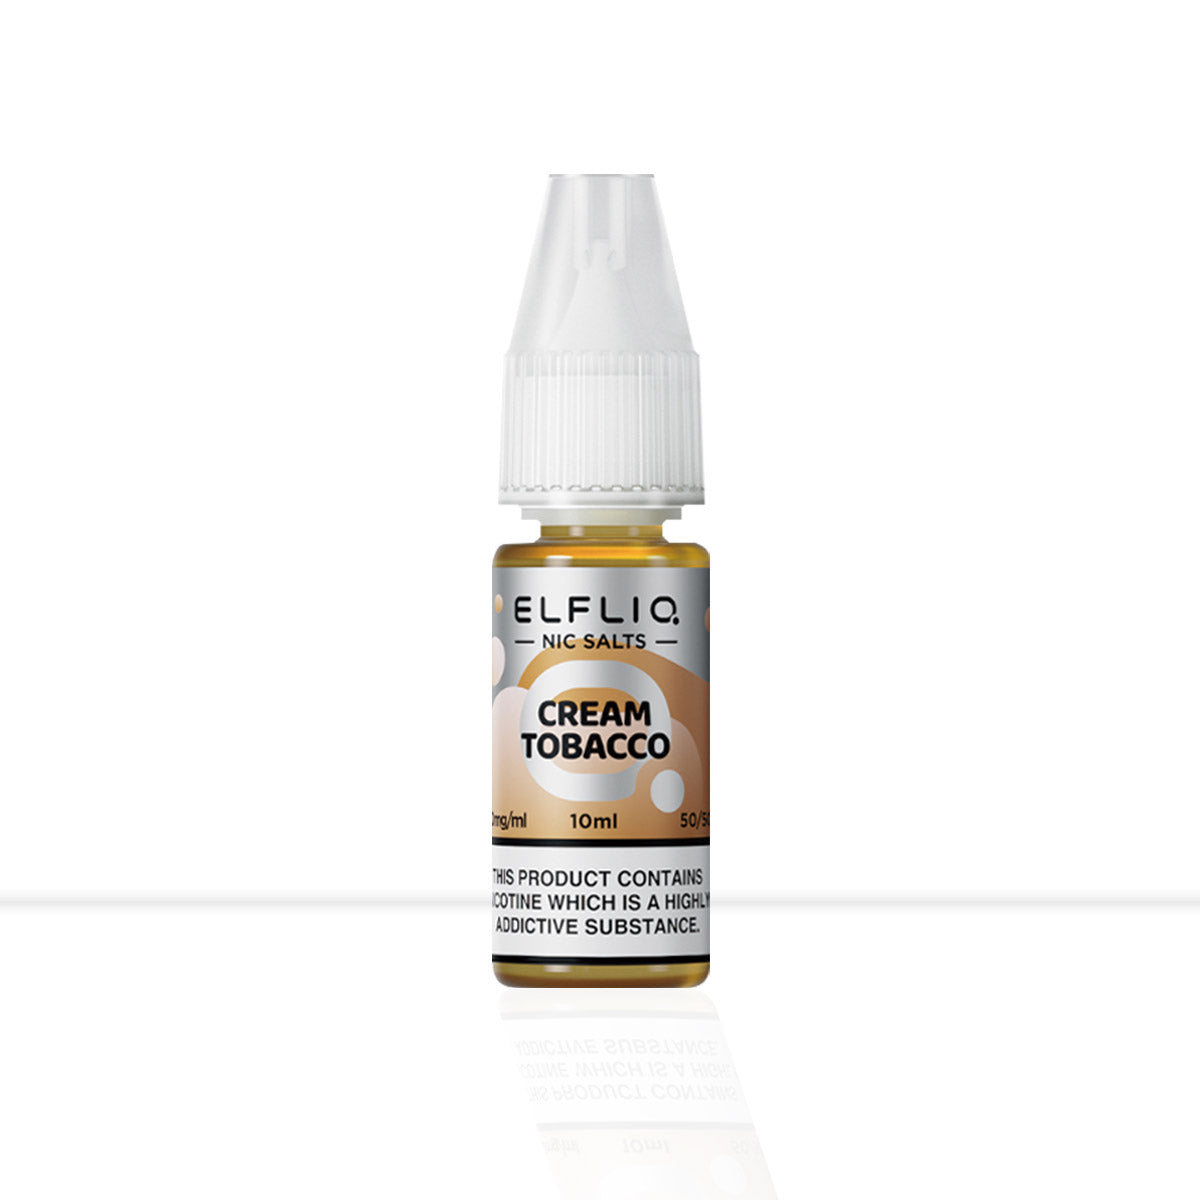 Cream Tobacco: Light Orange Elfliq Nic Salt E-Liquid